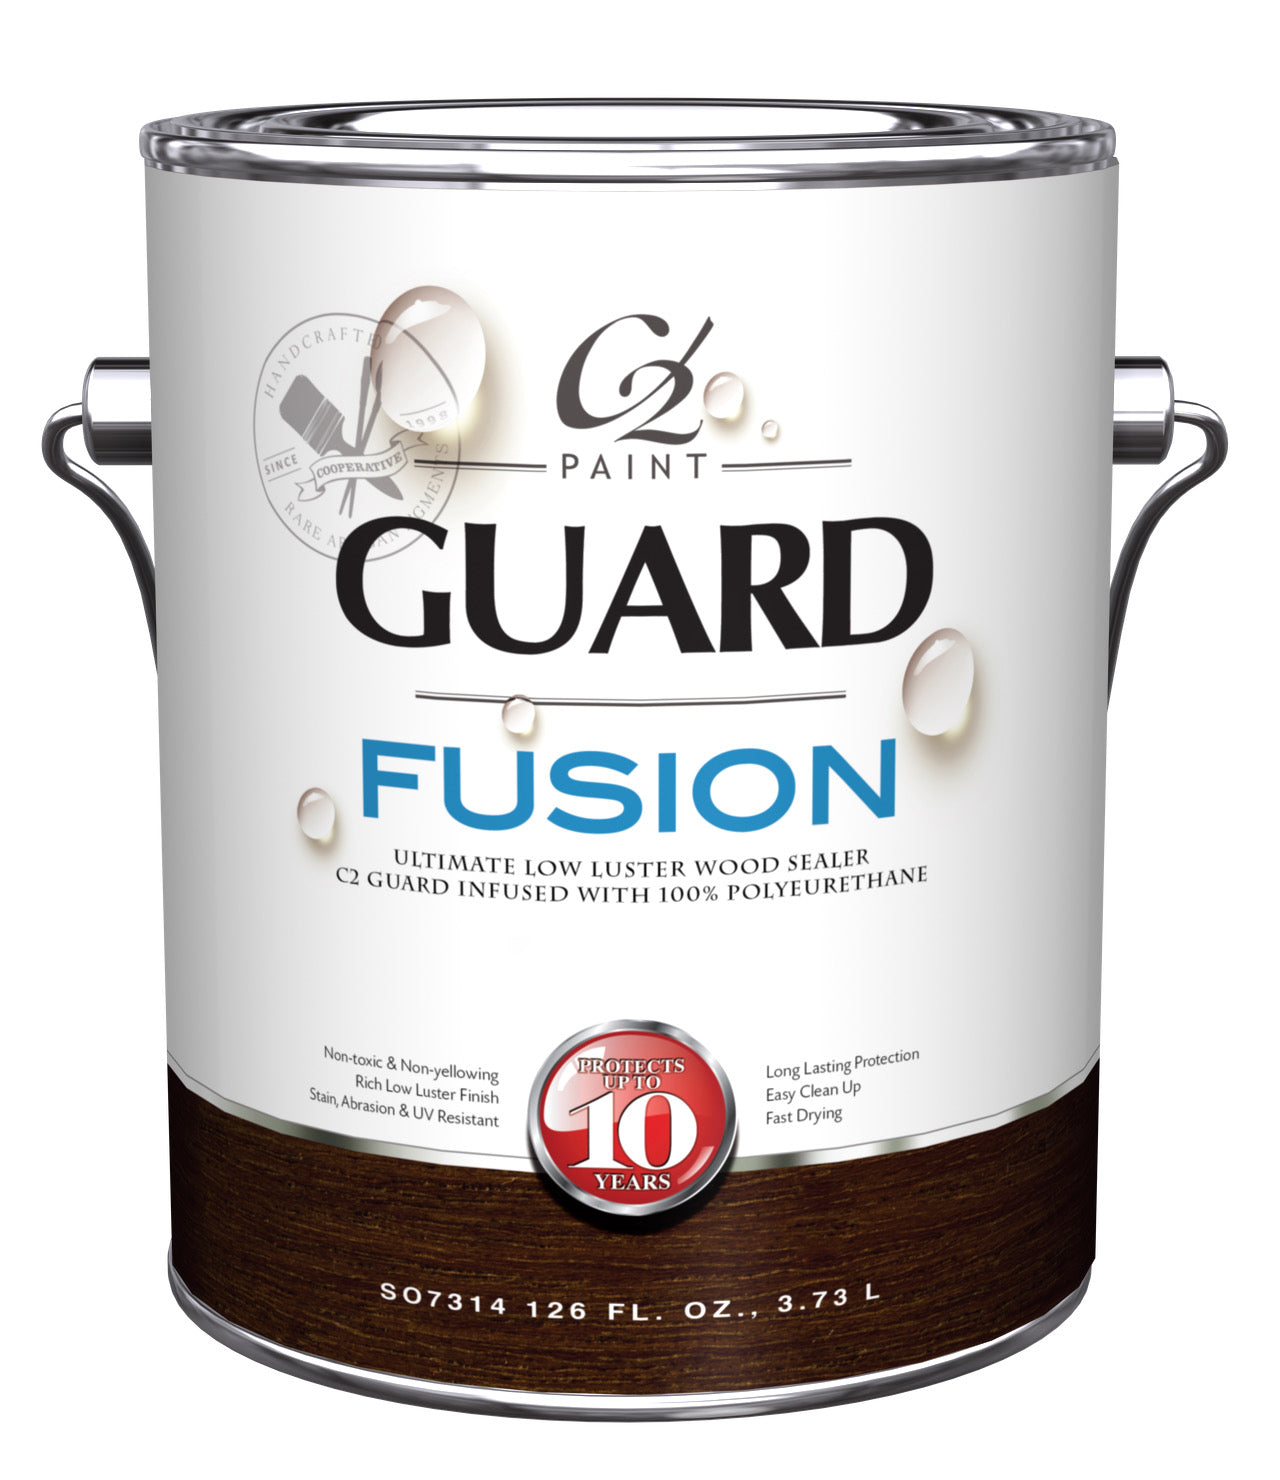 C2 Guard Fusion